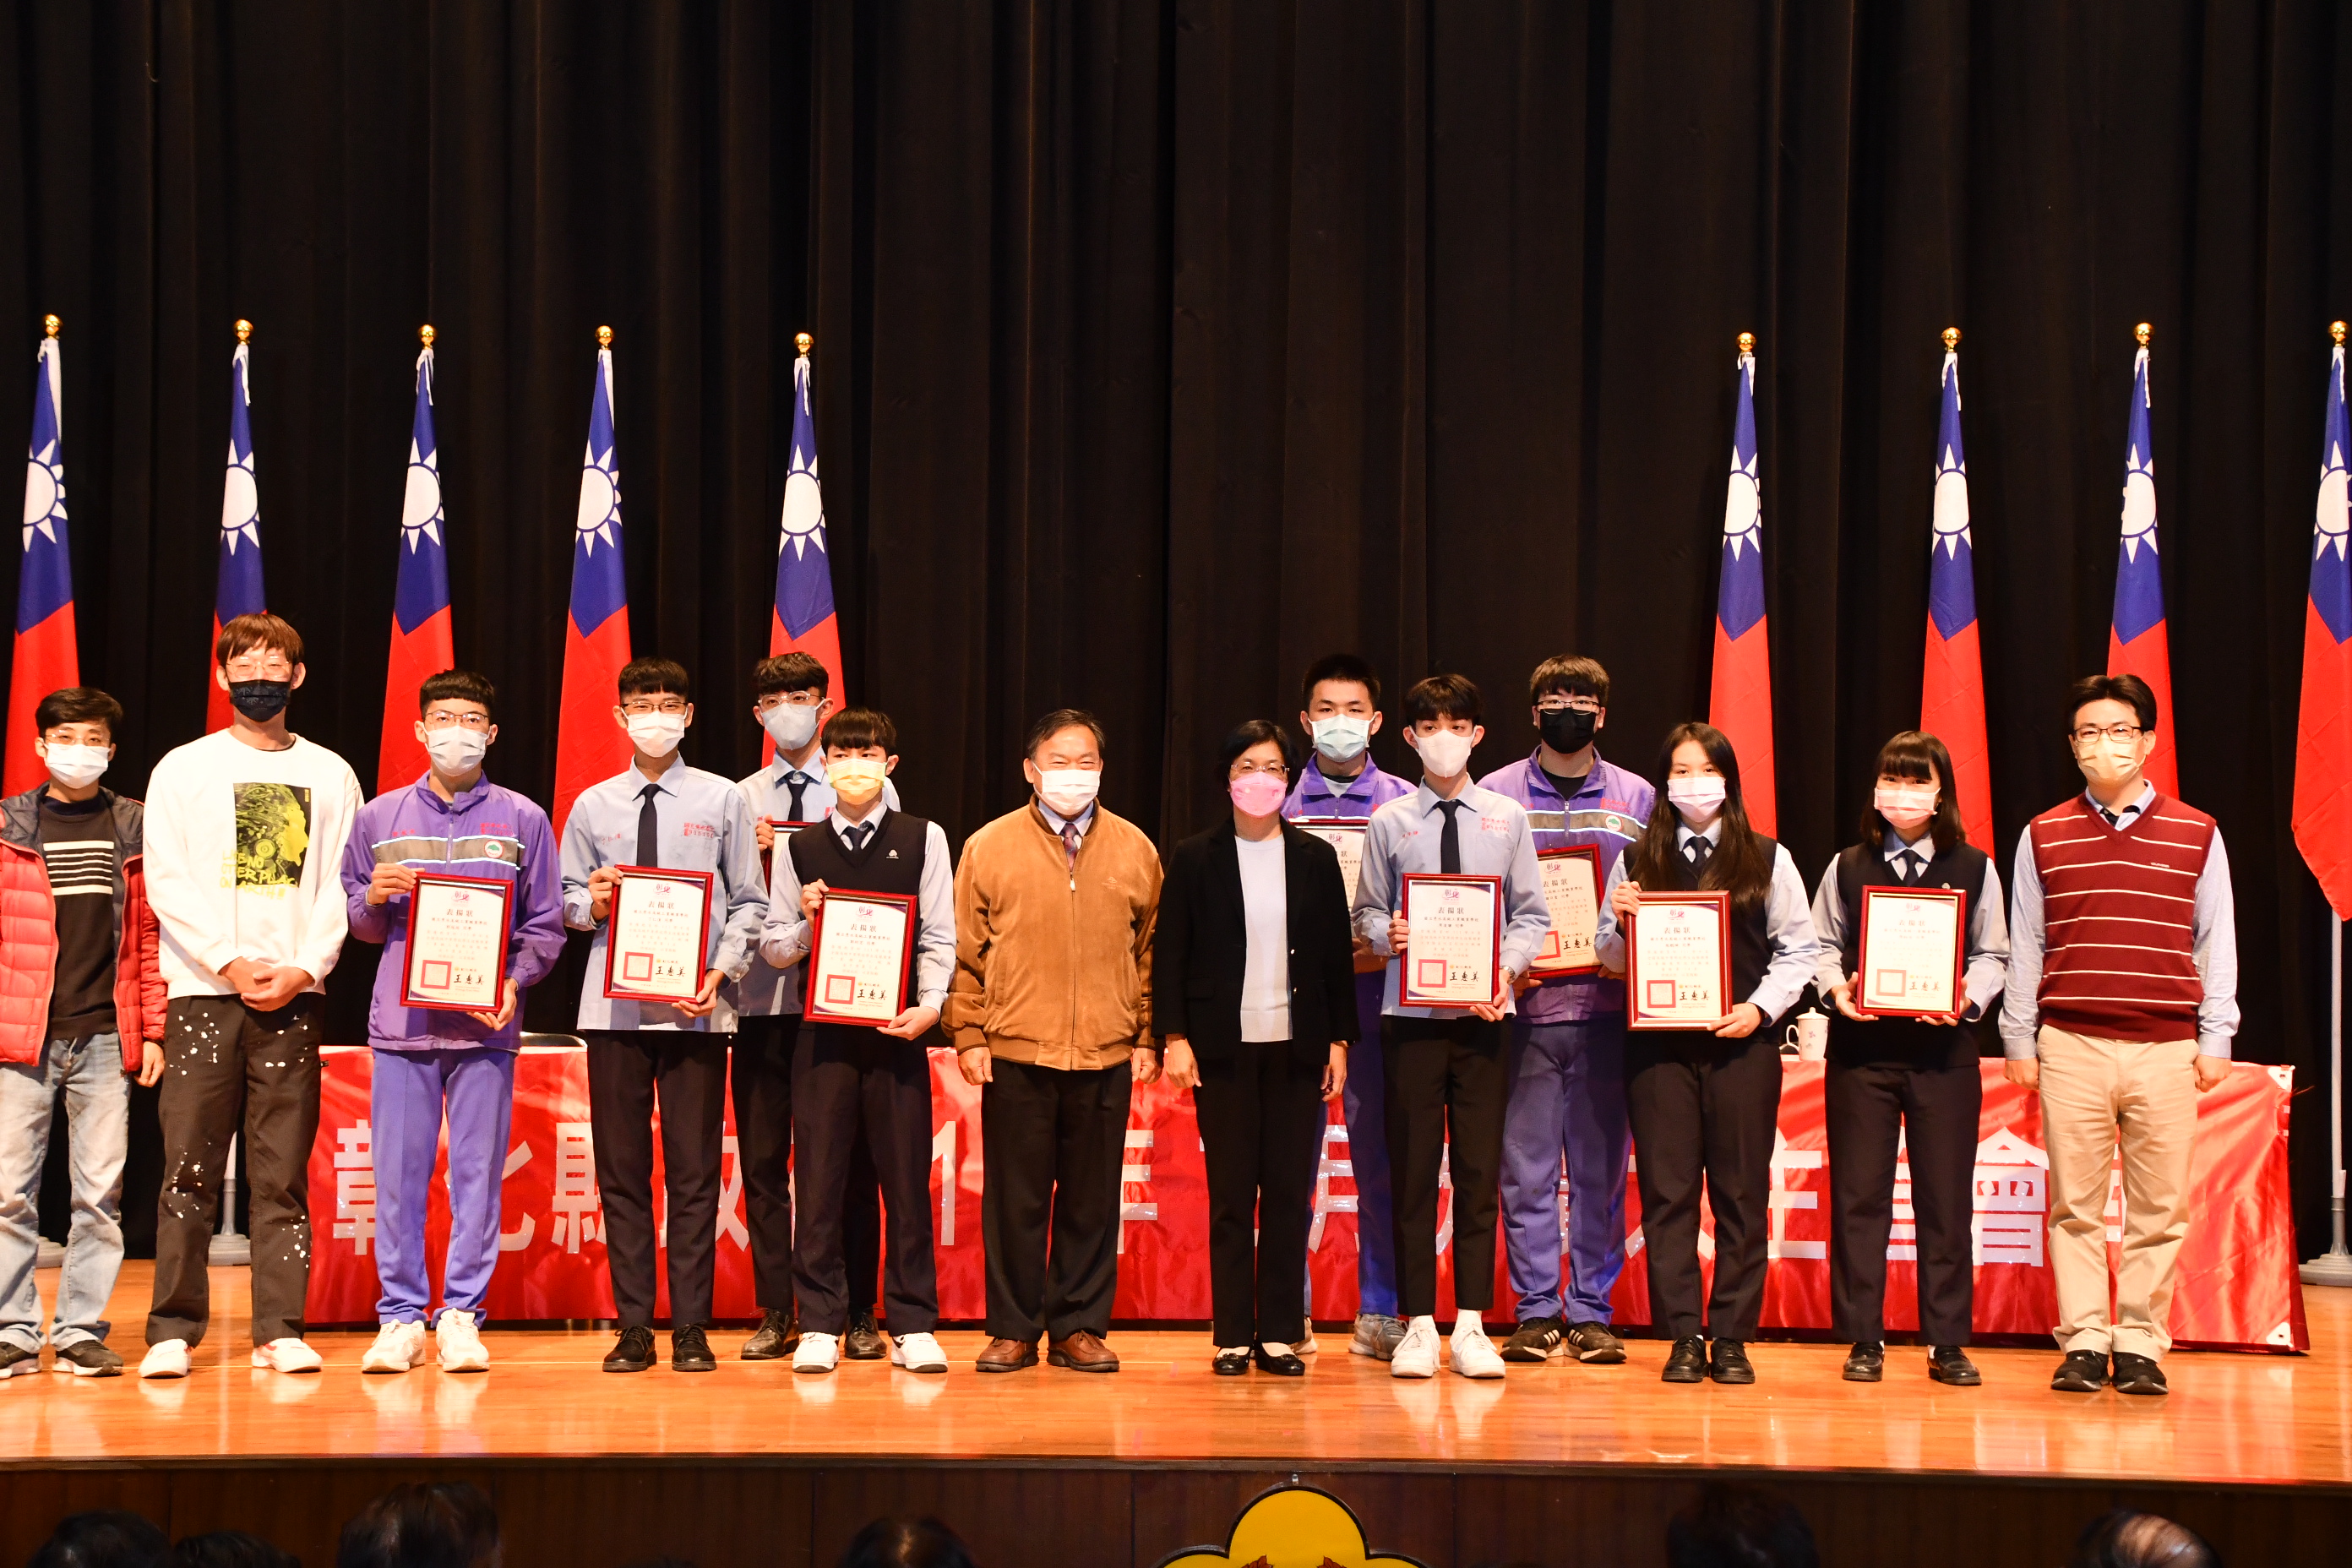 彰縣長表揚技藝競賽  勇奪39座金手獎的學生